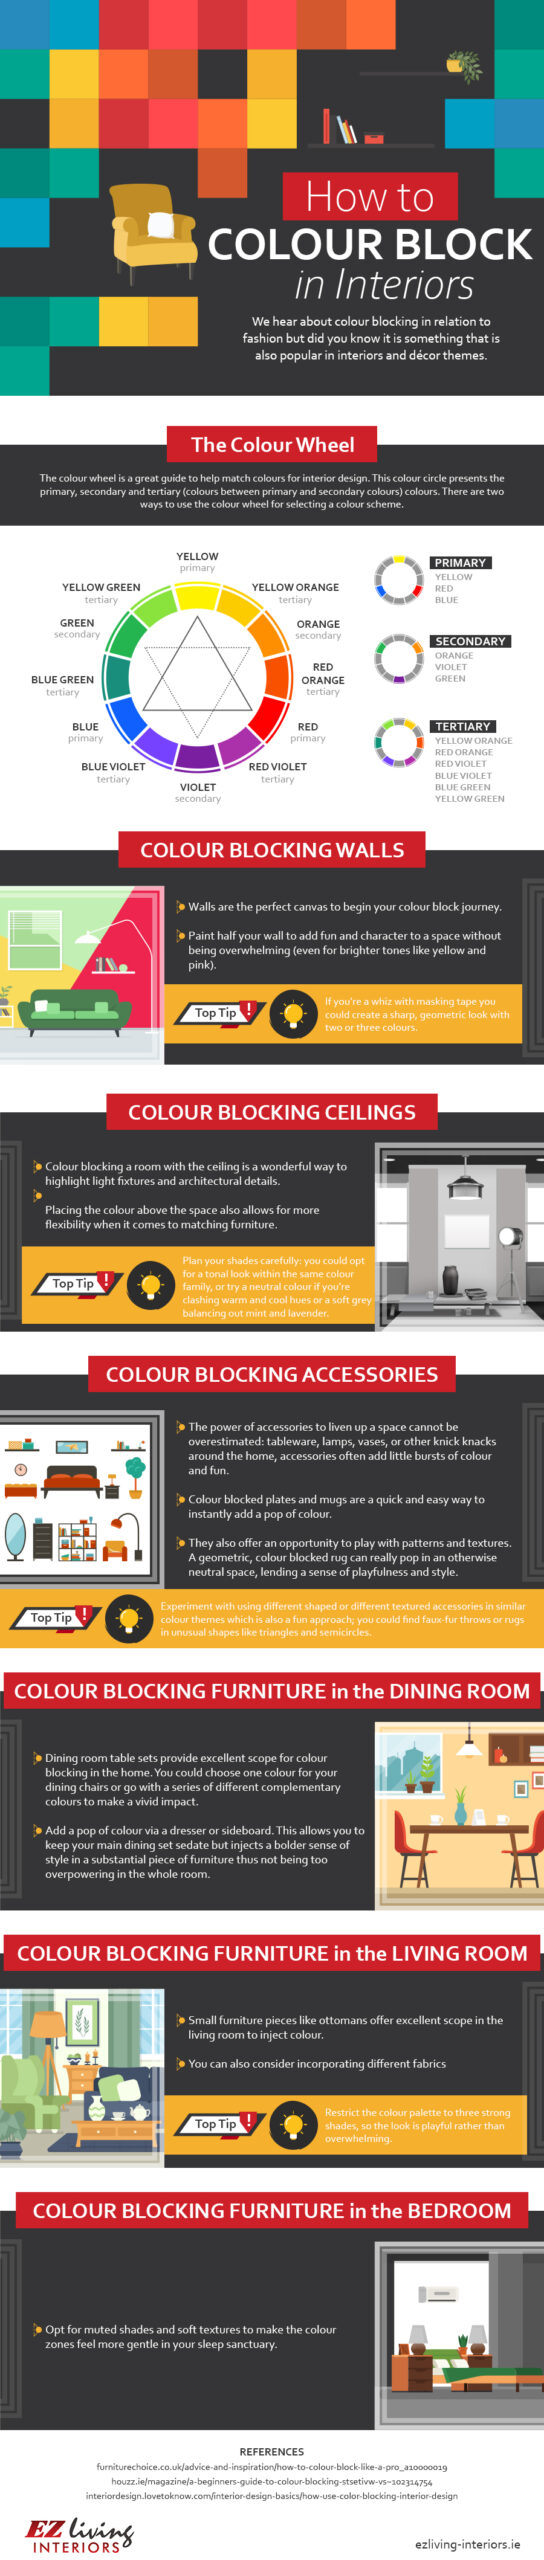 Colour Blocking in Interiors